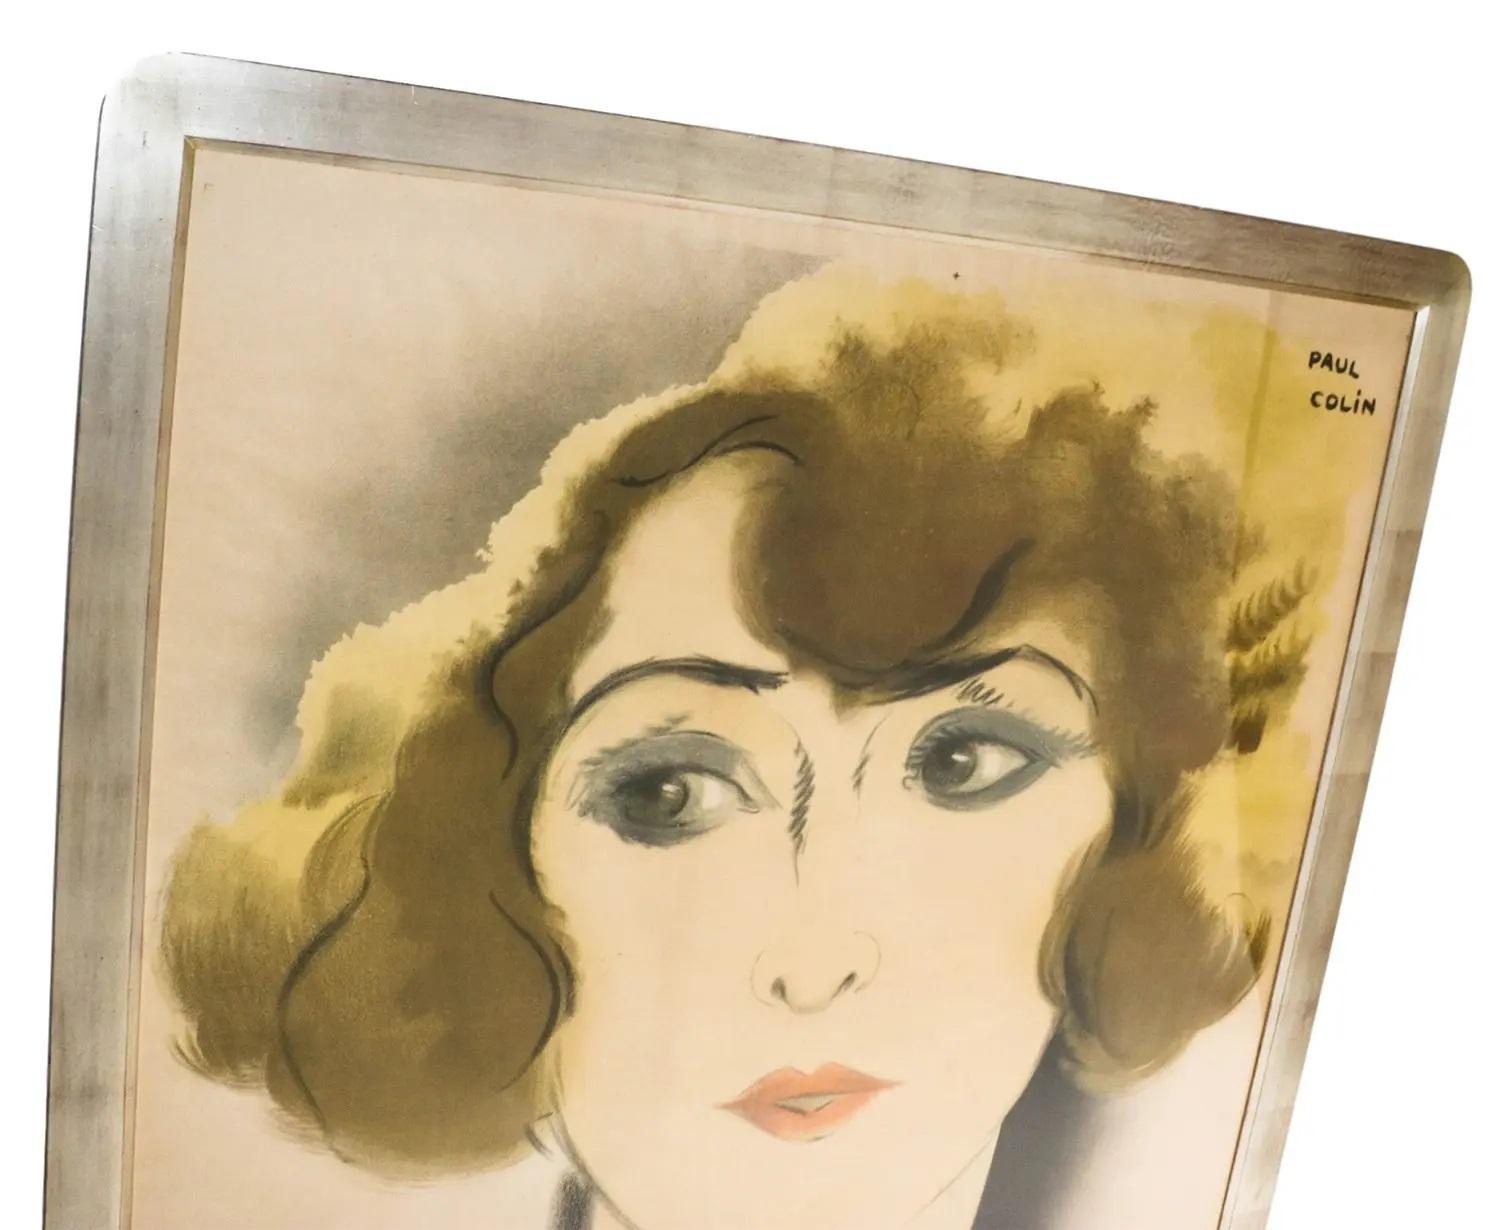 Il s'agit d'une affiche publicitaire originale de l'époque Art déco française.  Marguerite Valmond' de Paul Colin imprimé par H. Chachoin. Rendue célèbre en 1928, elle est spectaculaire et d'une facture exquise. Cette grande lithographie colorée